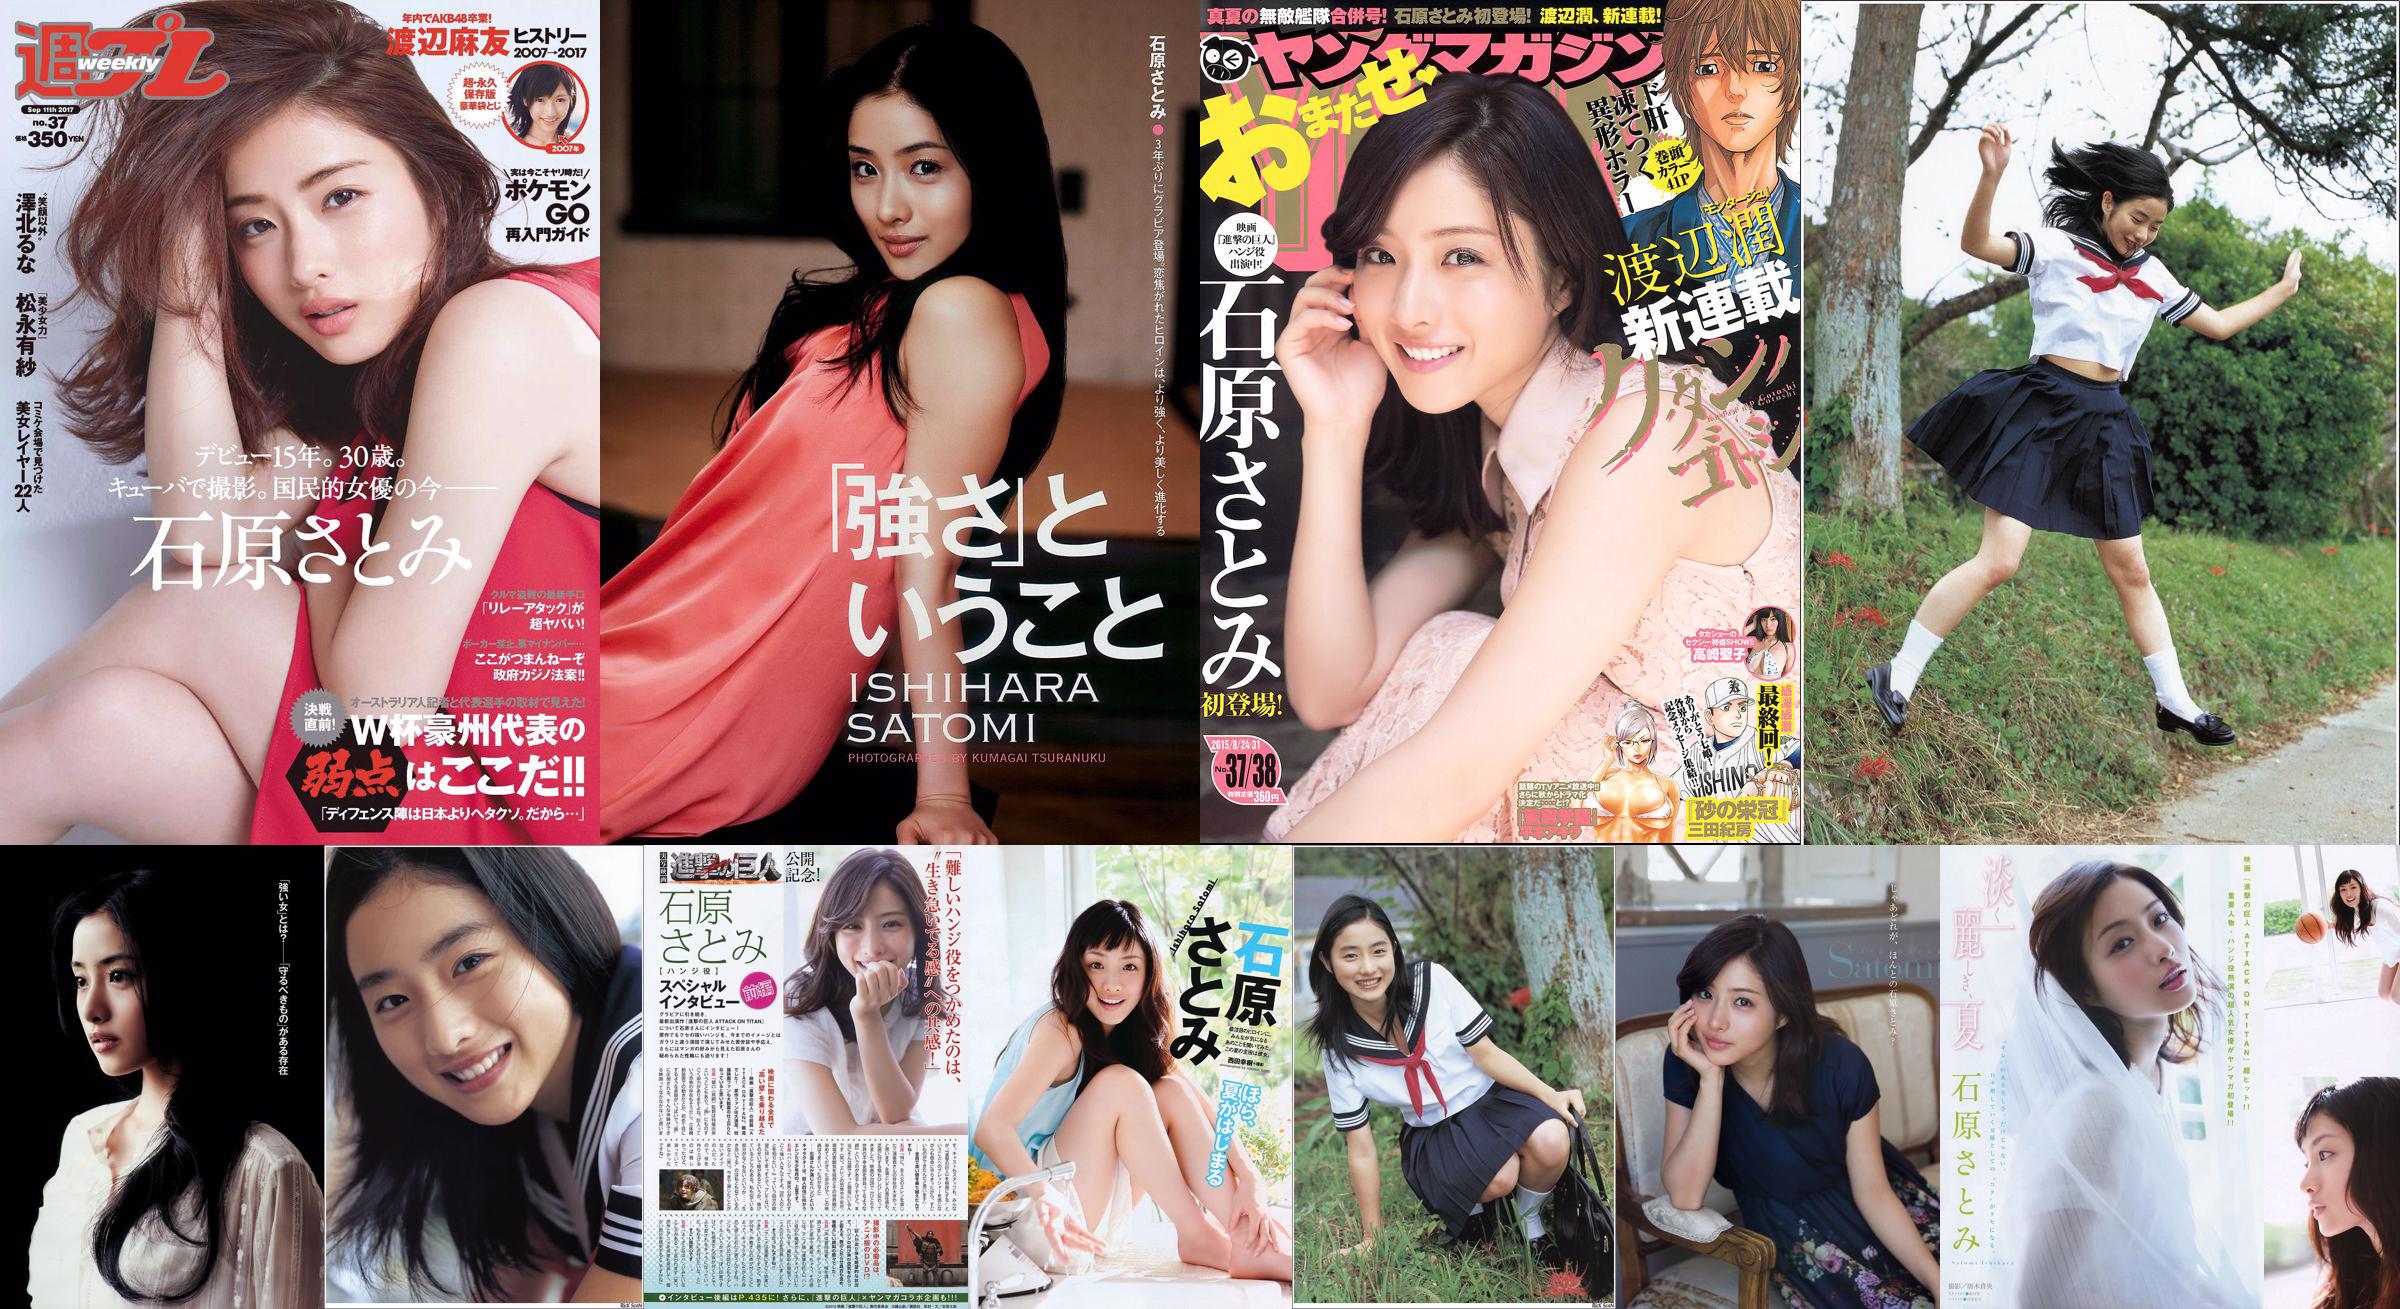 [Young Magazine] Ishihara さとみ Takasaki Seiko 2015 No.37-38 Photo Magazine No.316e75 Seite 4